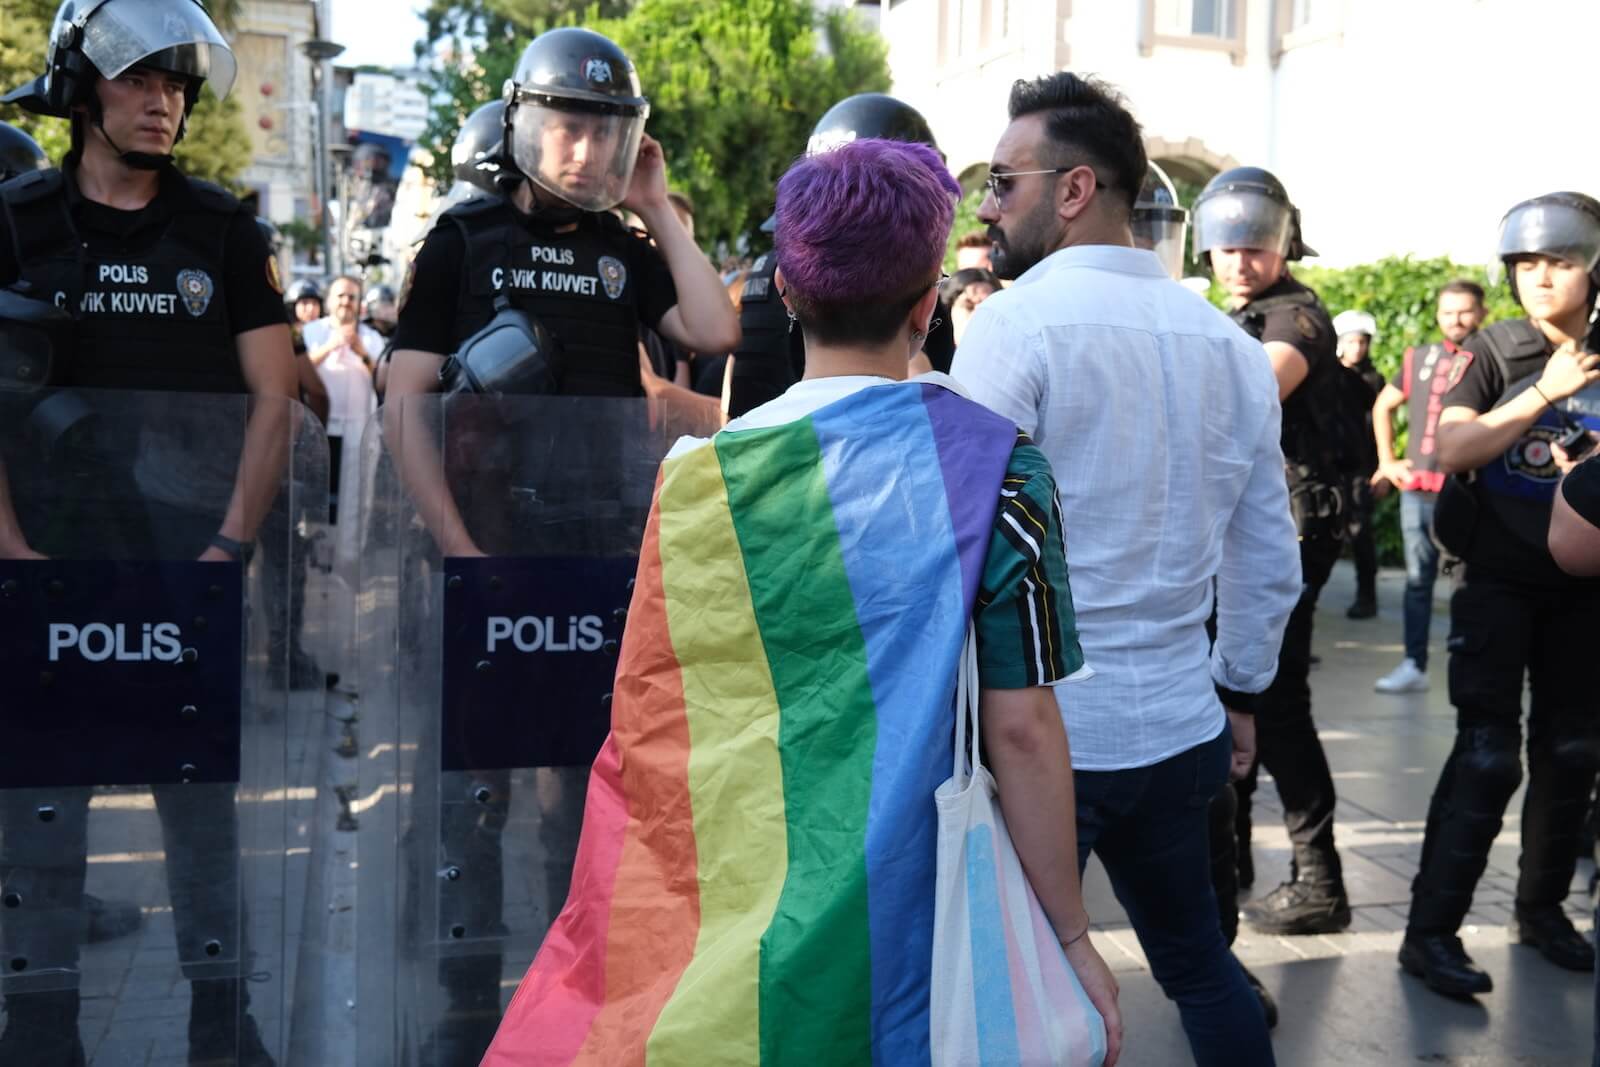 İzmir Barosu’ndan Onur Yürüyüşü’ndeki hukuksuzluğa suç duyurusu | Kaos GL - LGBTİ+ Haber Portalı Haber